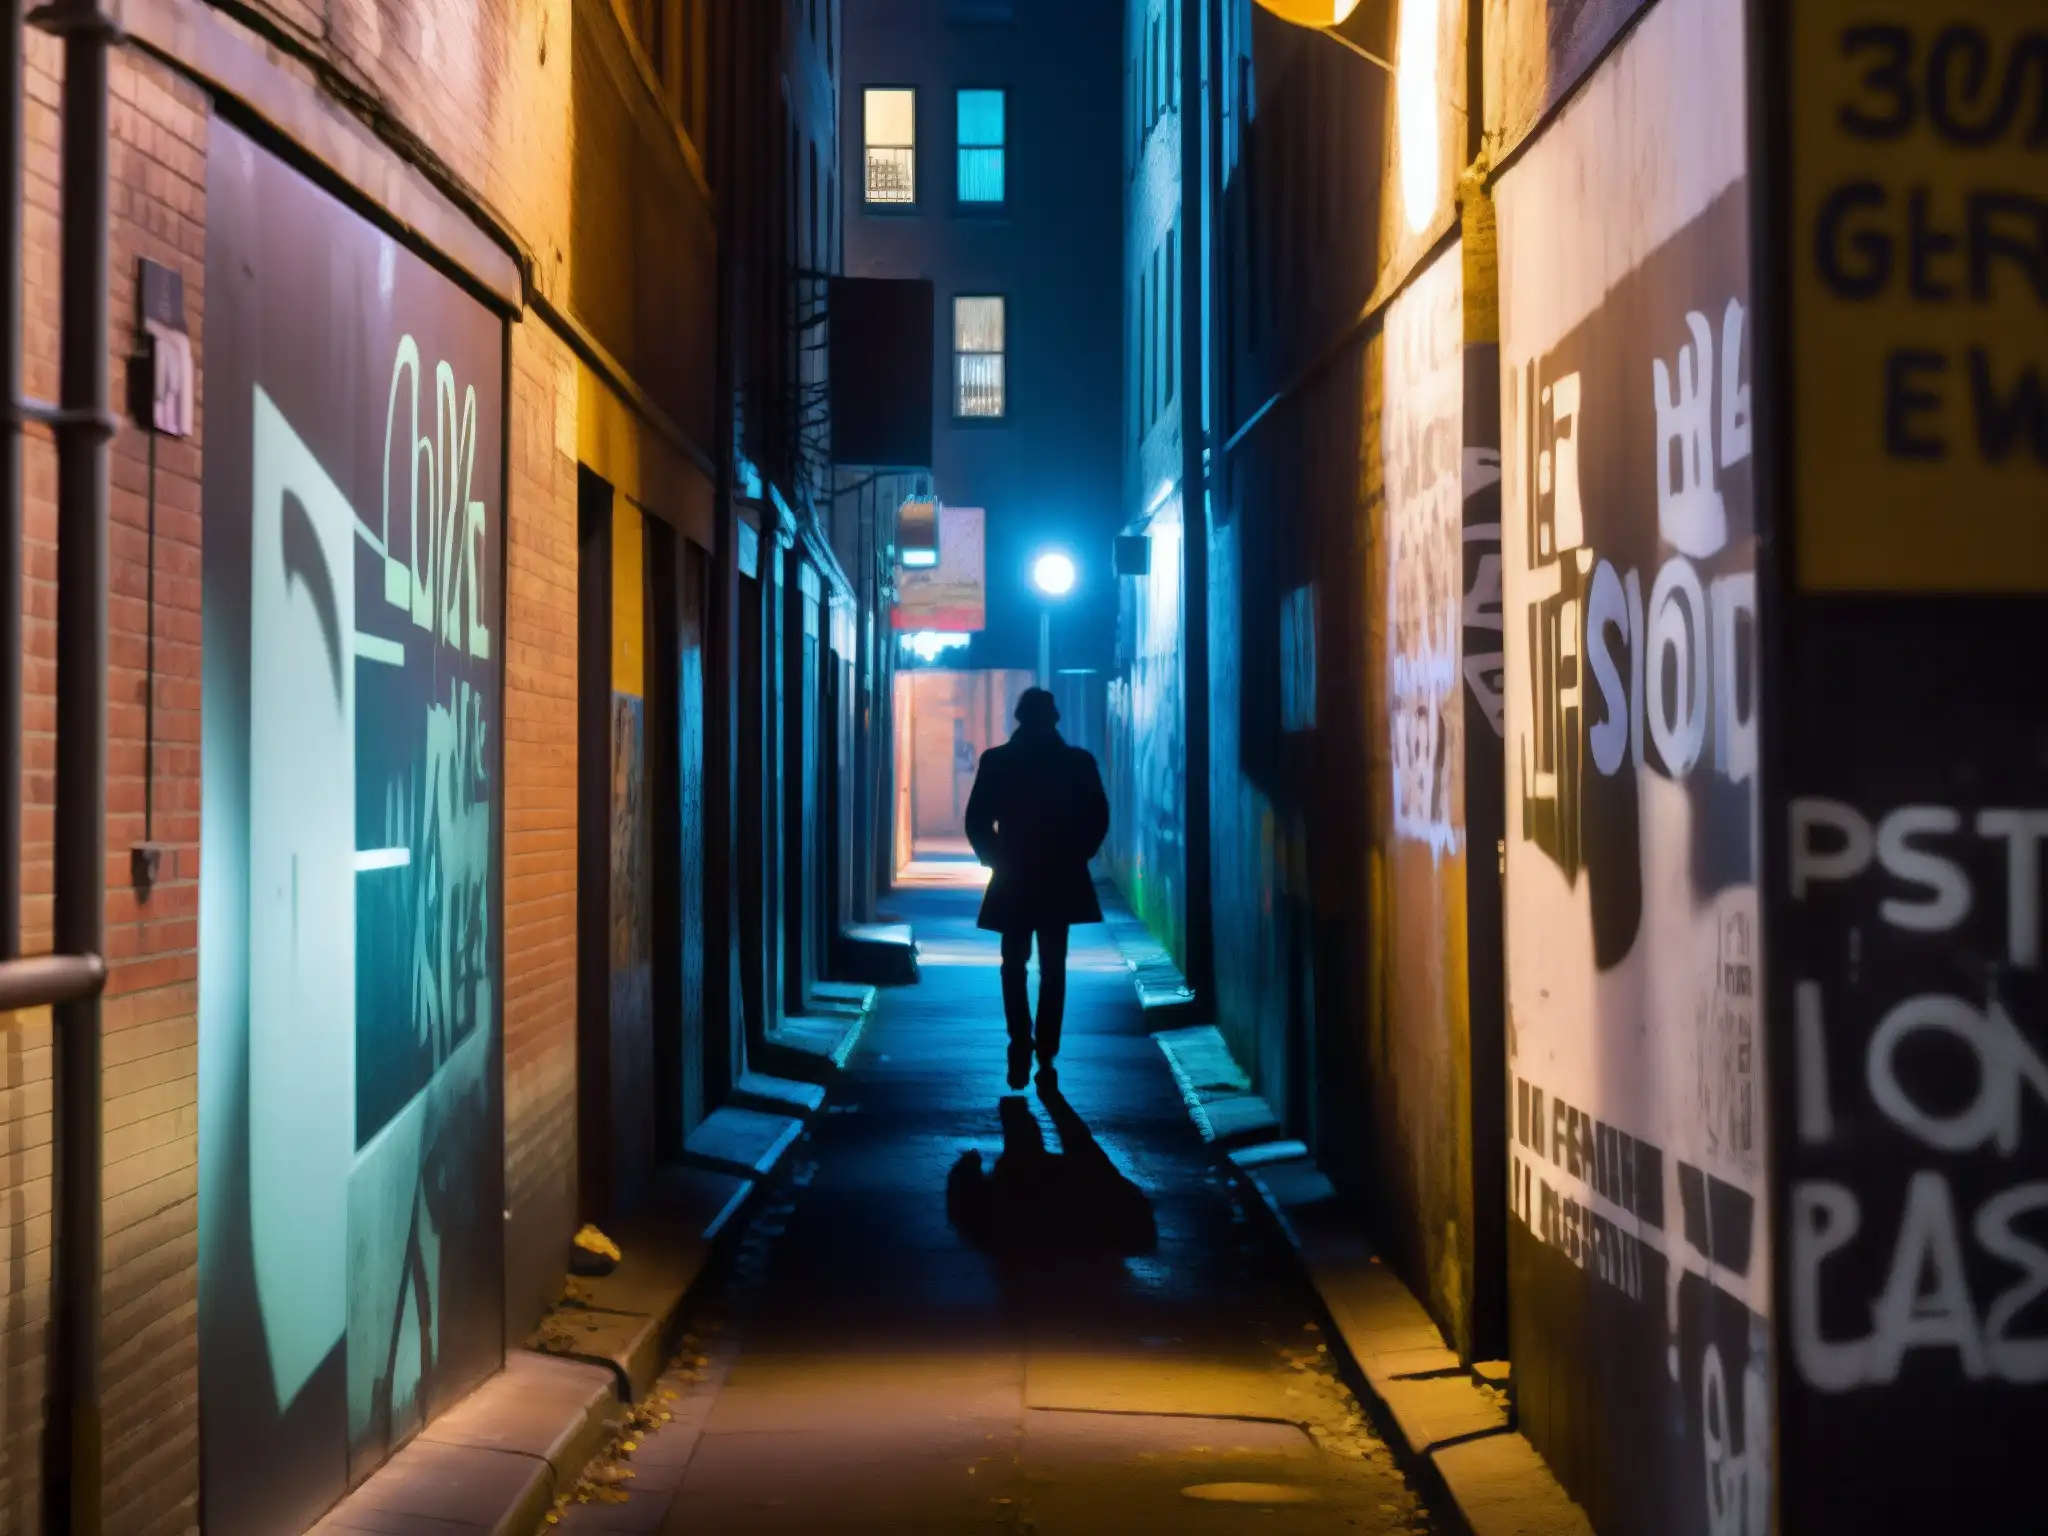 Un callejón nocturno con una figura solitaria caminando hacia la cámara, evocando leyendas urbanas y miedo inconsciente